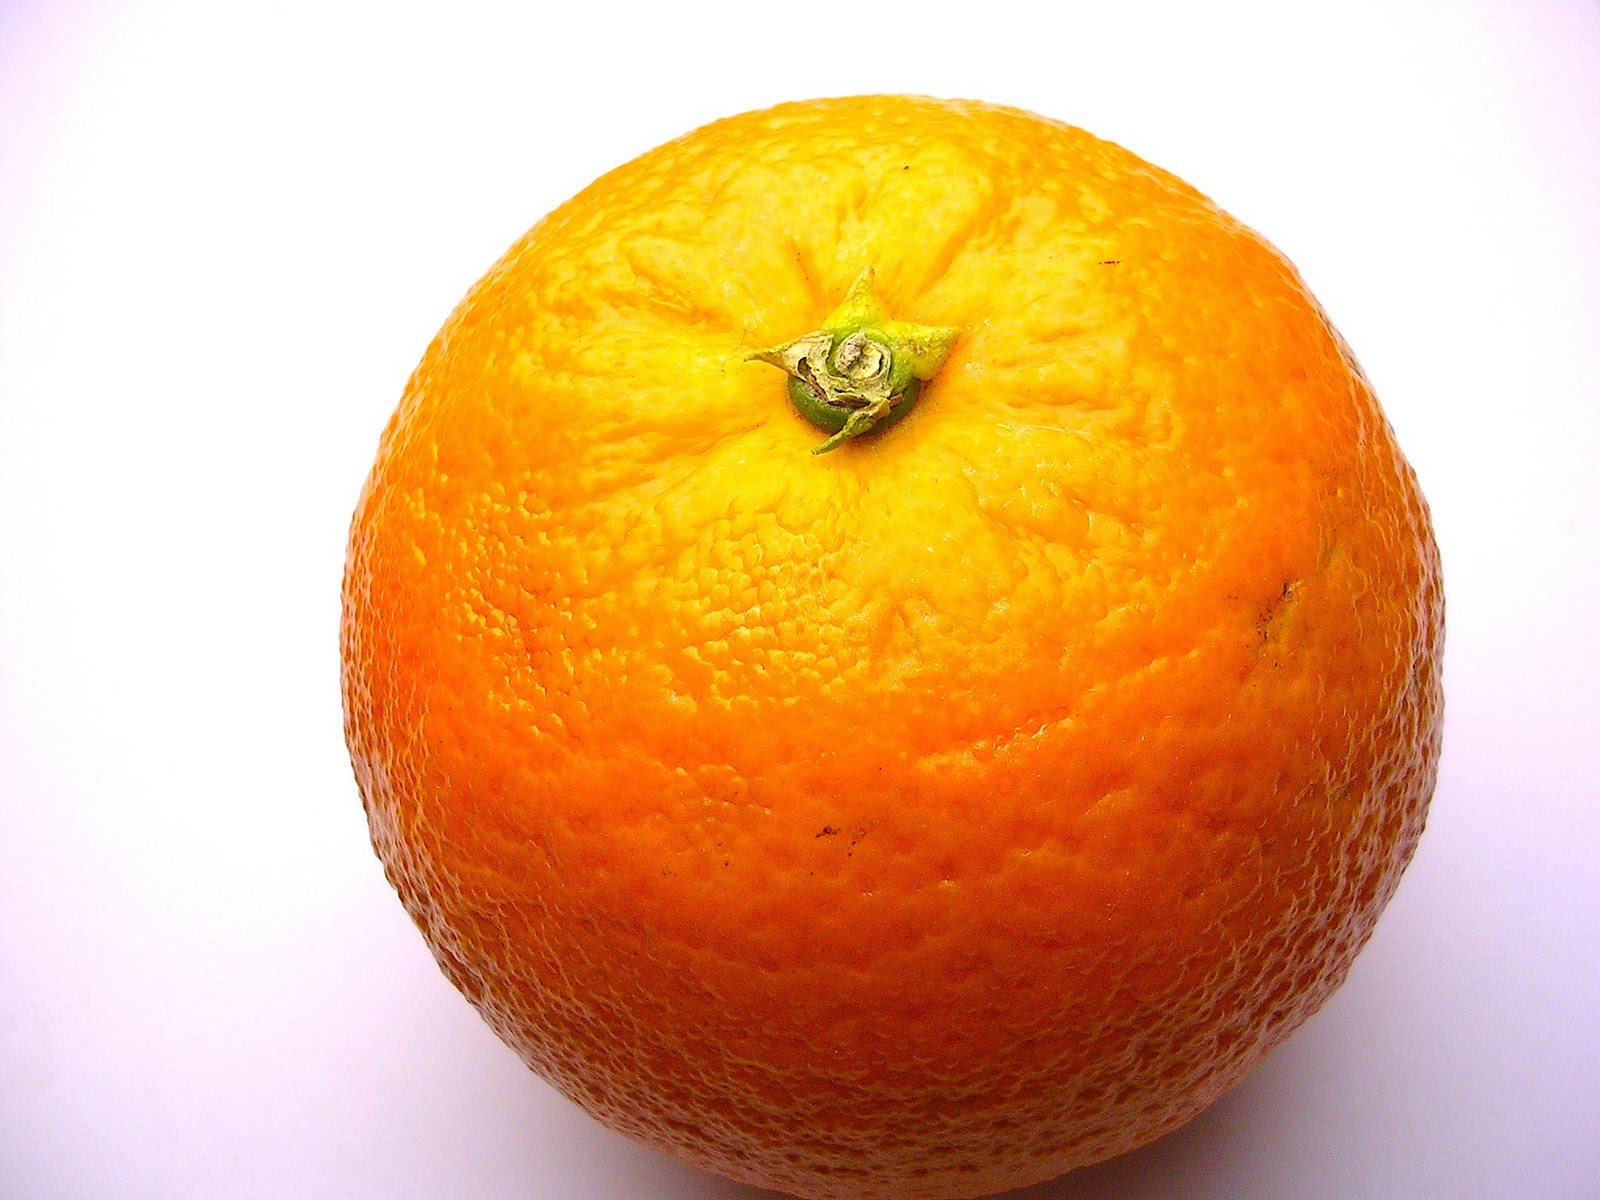 Bilder-Bibliothek: Orangen, Apfelsinen